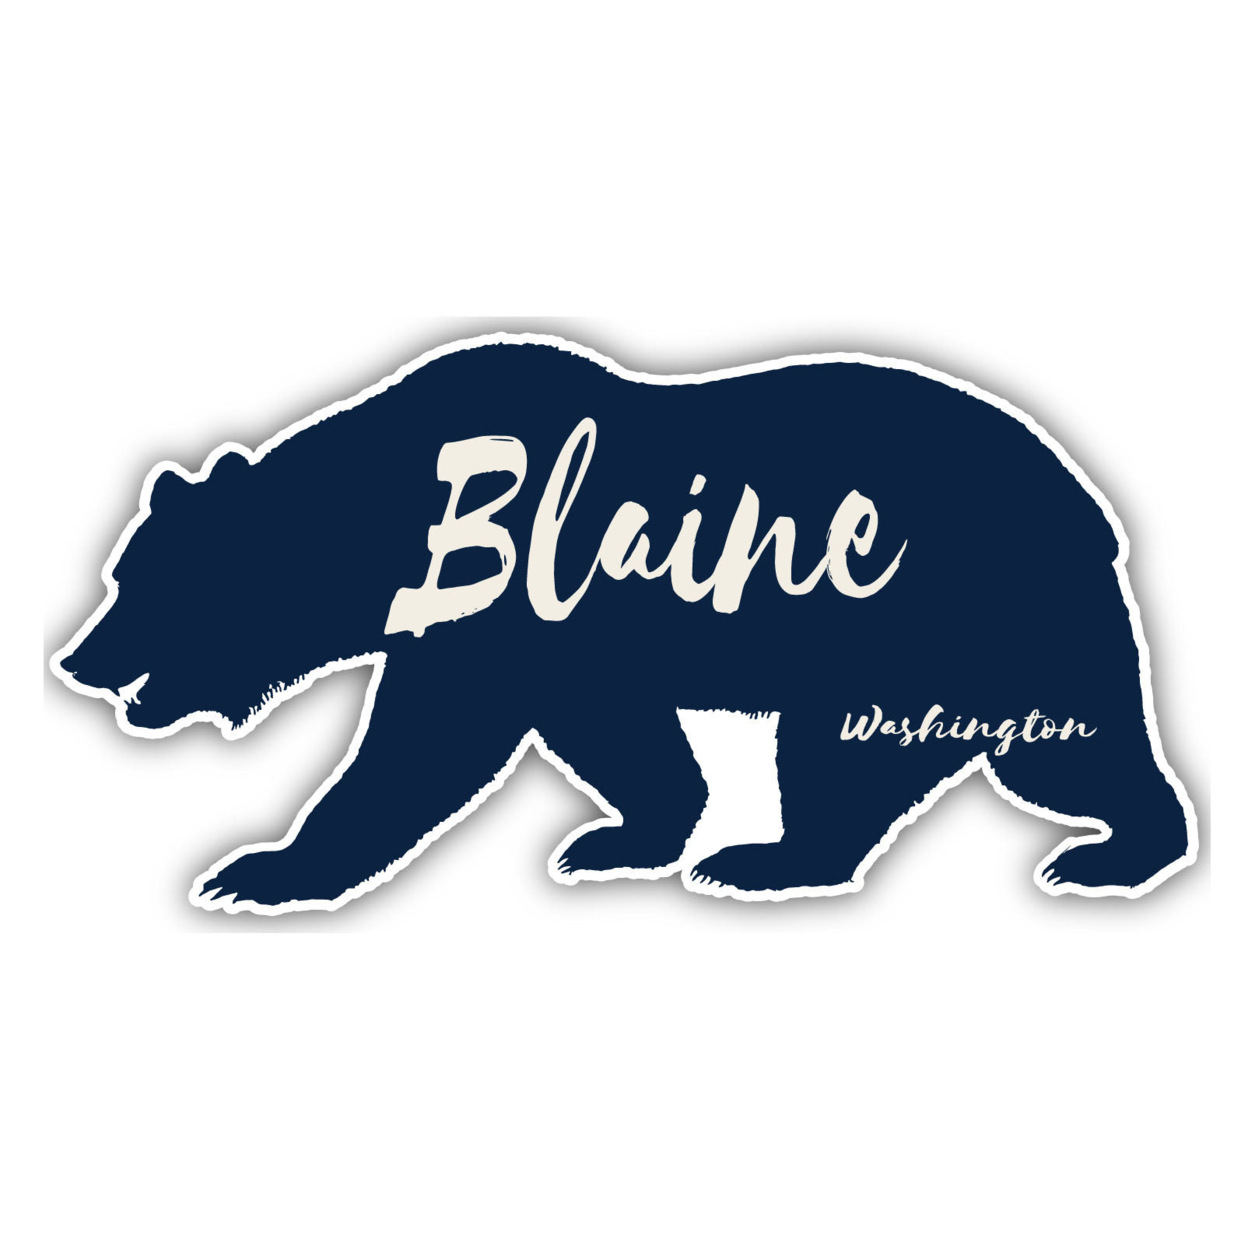 Blaine Washington Souvenir Decorative Stickers (Choose Theme And Size) - 4-Pack, 8-Inch, Tent